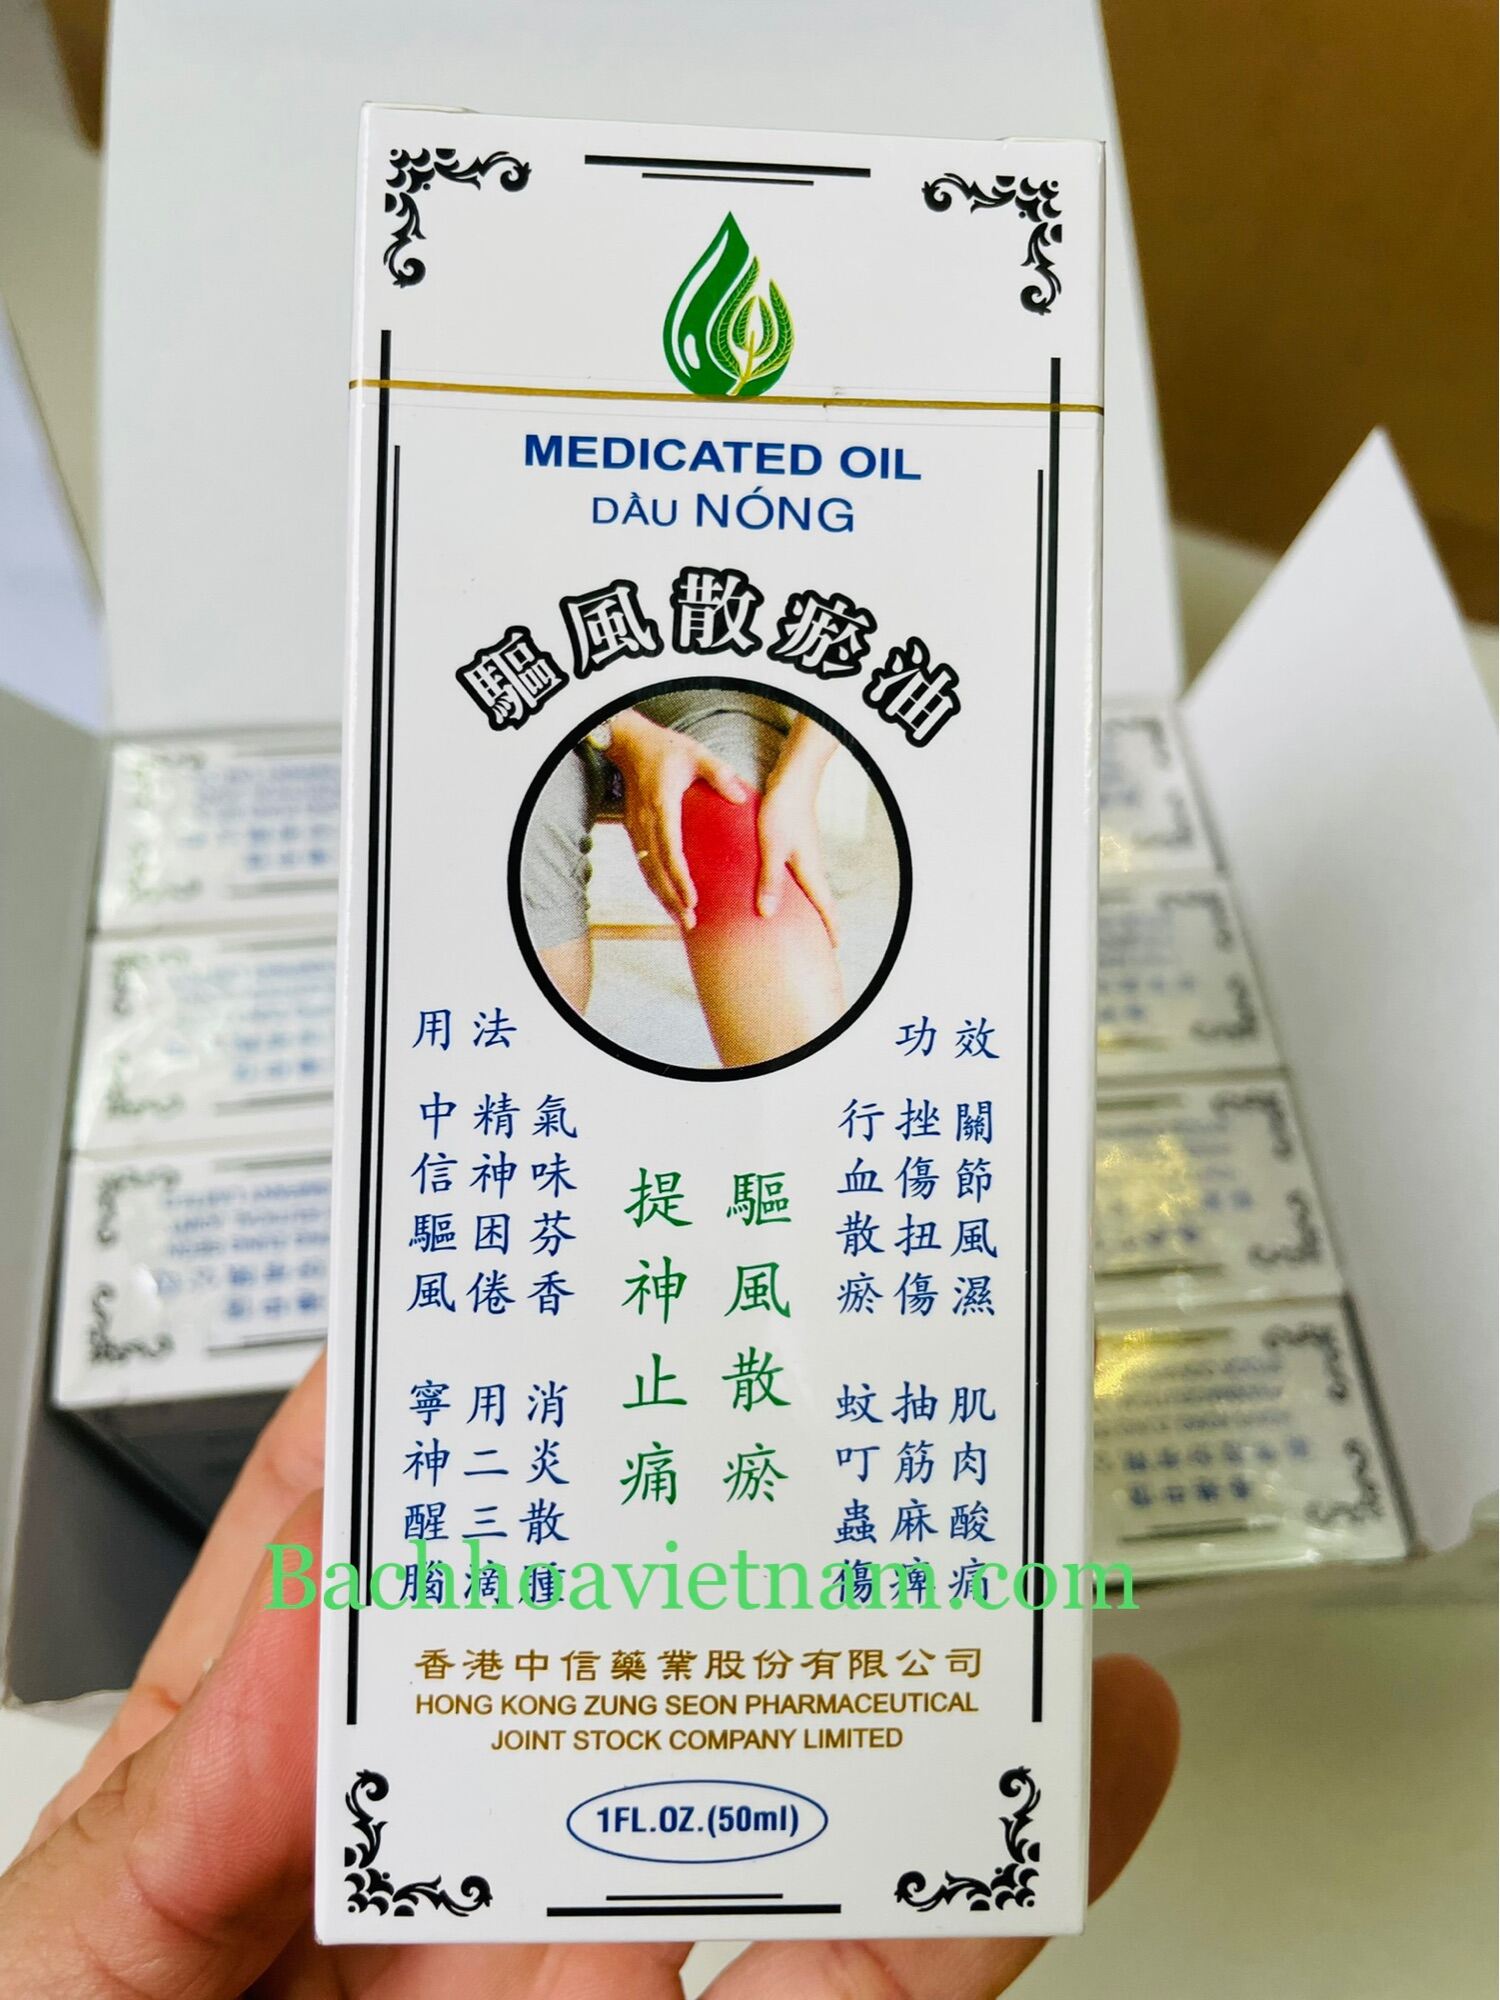 Dầu nóng (Cty Di Hào nhượng quyền Hồng Kông) Medicated Oil 50ml hết đau nhức|đau lưng|nhức mỏi|đau nhức tay chân|Diệt khuẩn, thơm, công thức cổ truyền|Thoa ngoài da|Dầu trắng